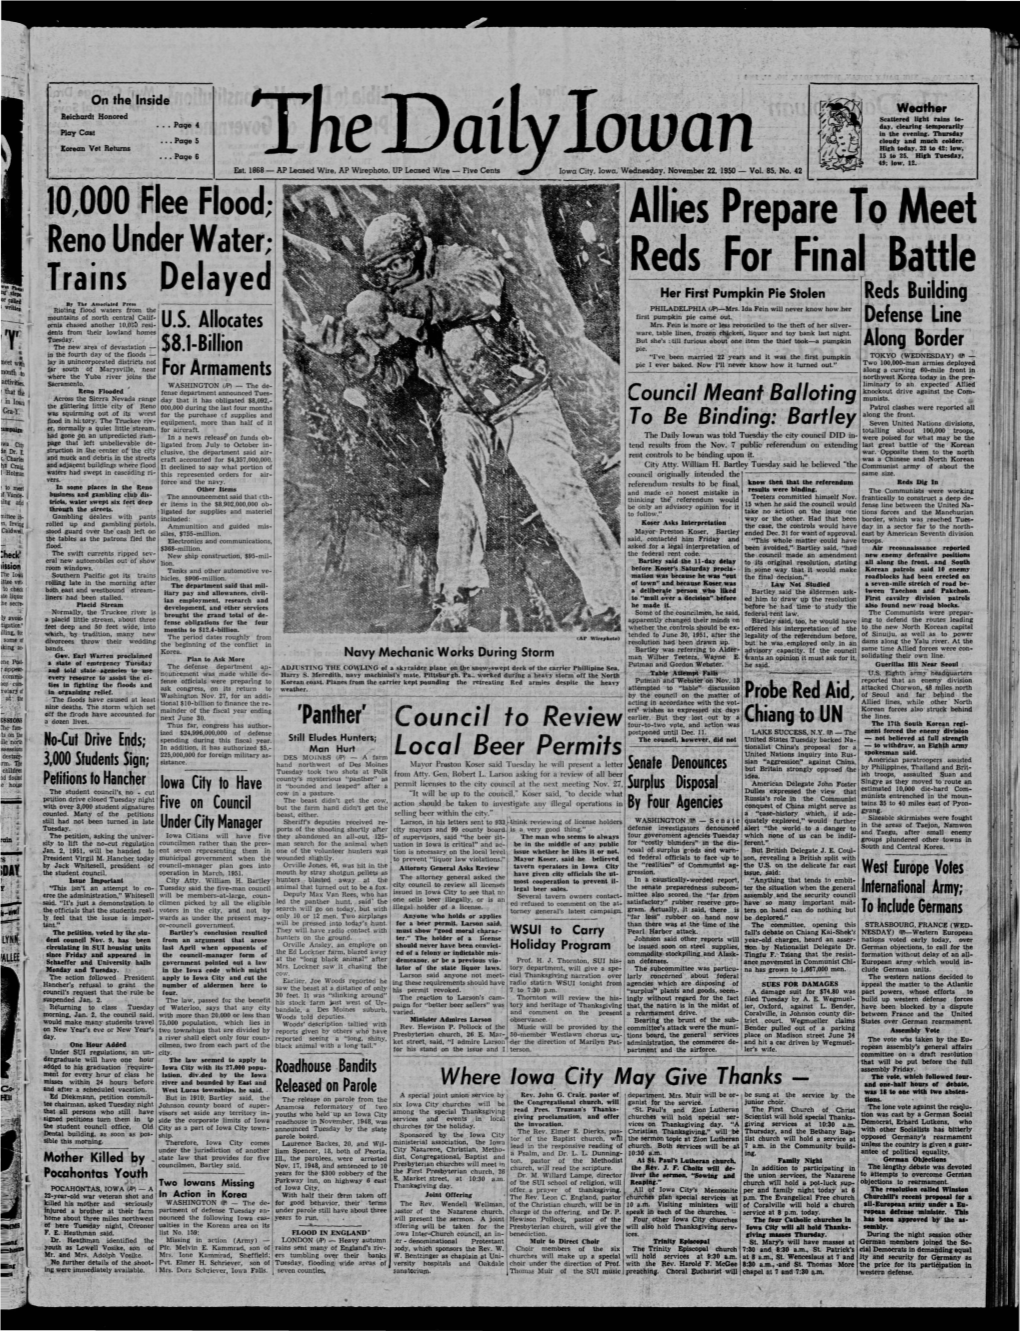 Daily Iowan (Iowa City, Iowa), 1950-11-22